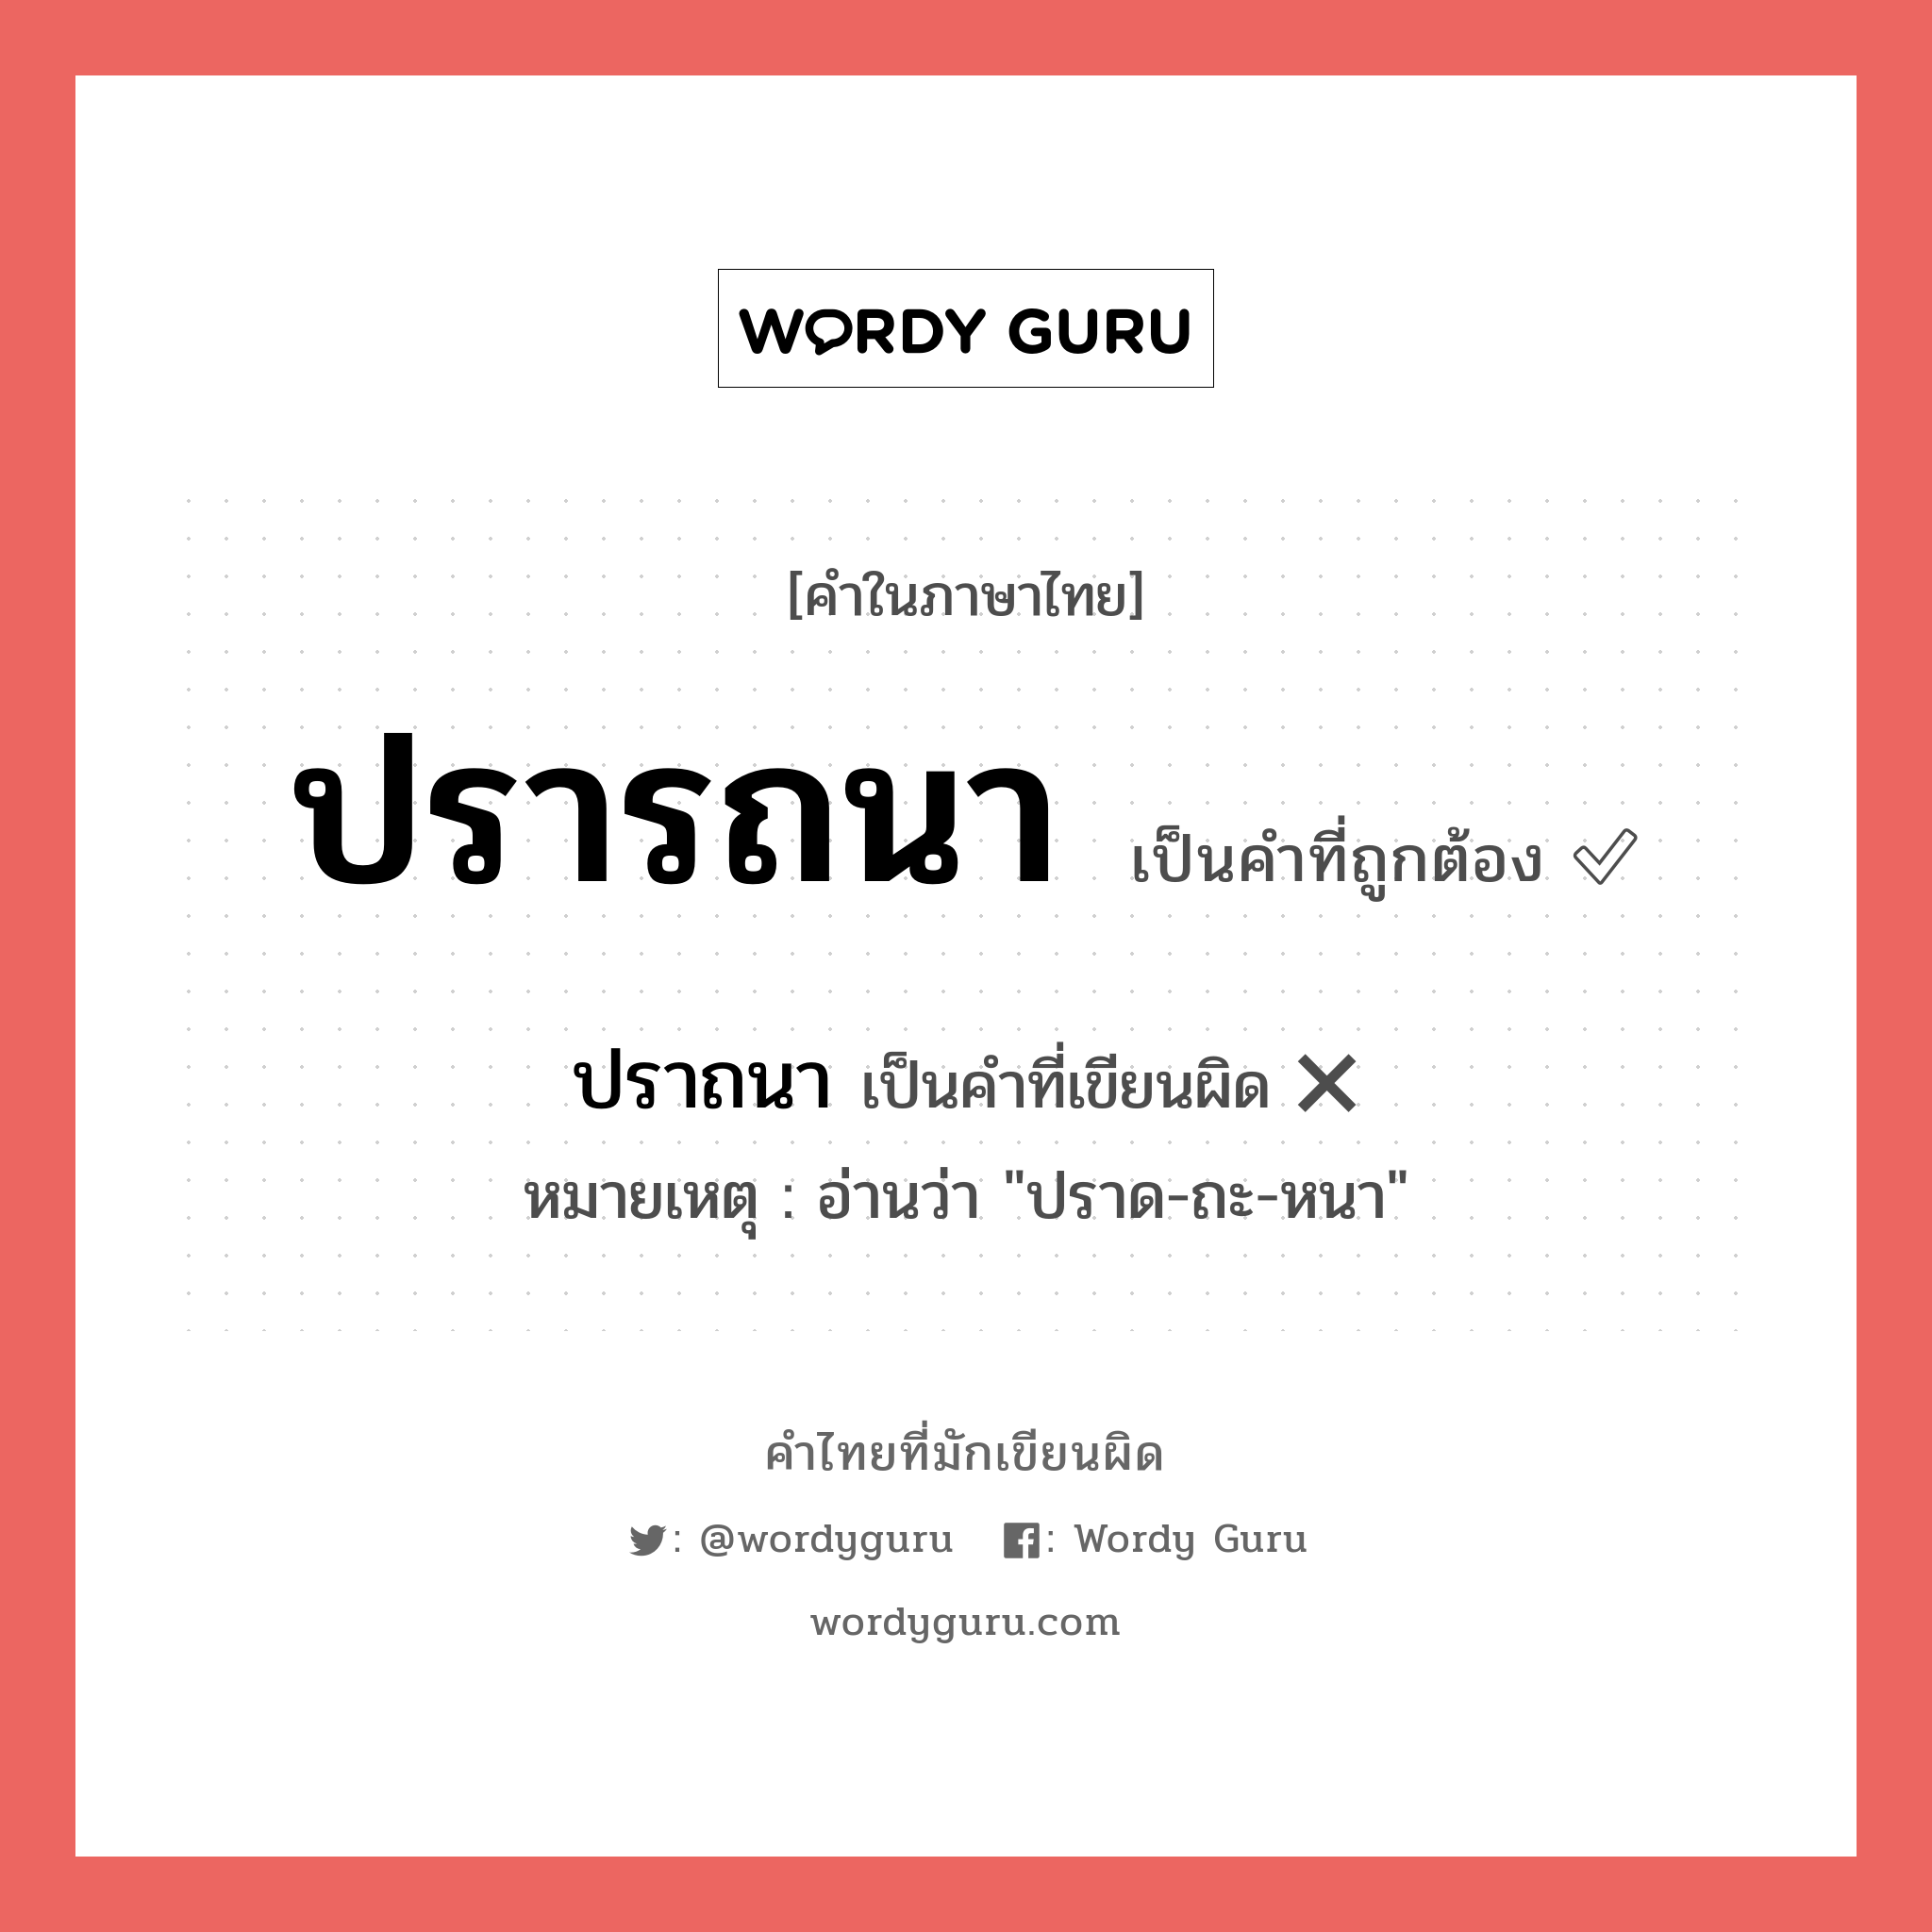 ปราถนา หรือ ปรารถนา คำไหนเขียนถูก?, คำในภาษาไทยที่มักเขียนผิด ปราถนา คำที่ผิด ❌ ปรารถนา หมายเหตุ อ่านว่า "ปราด-ถะ-หนา"